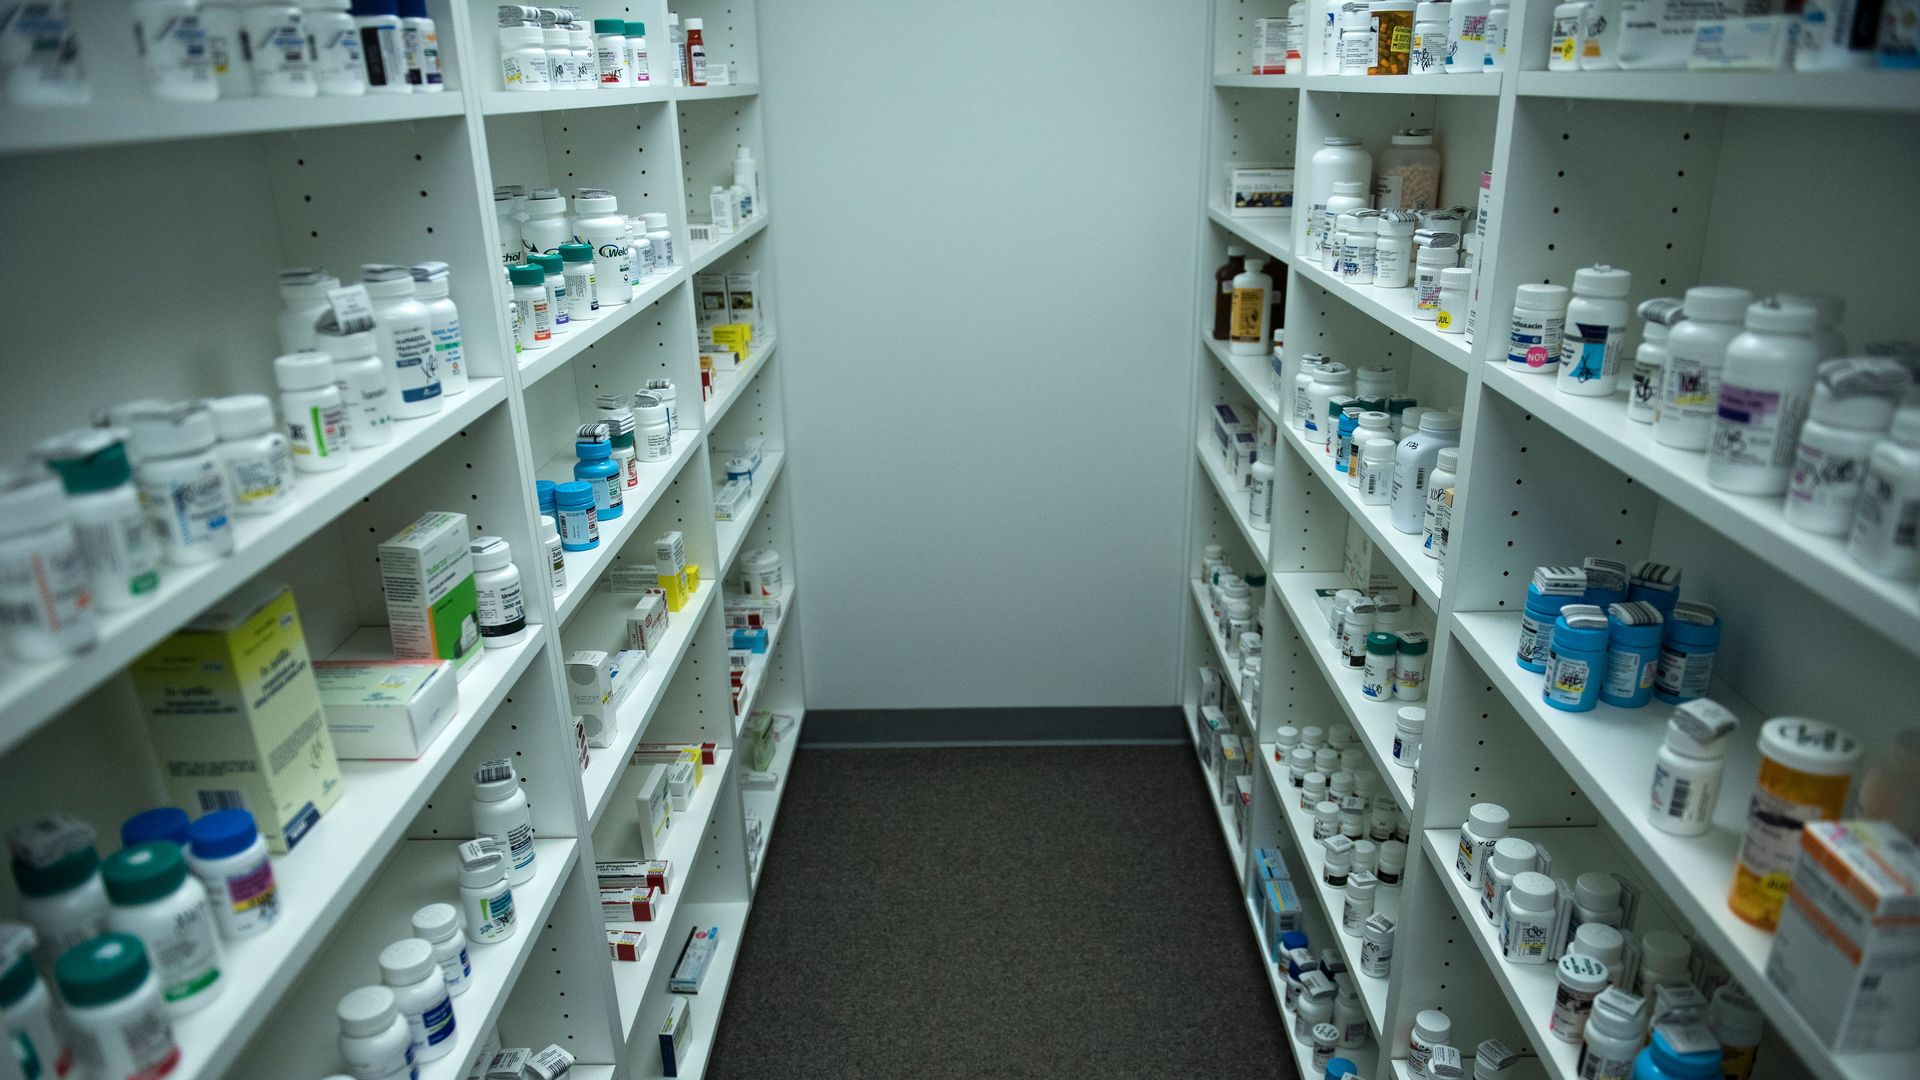 Stocked medication on shelves in a pharmacy.